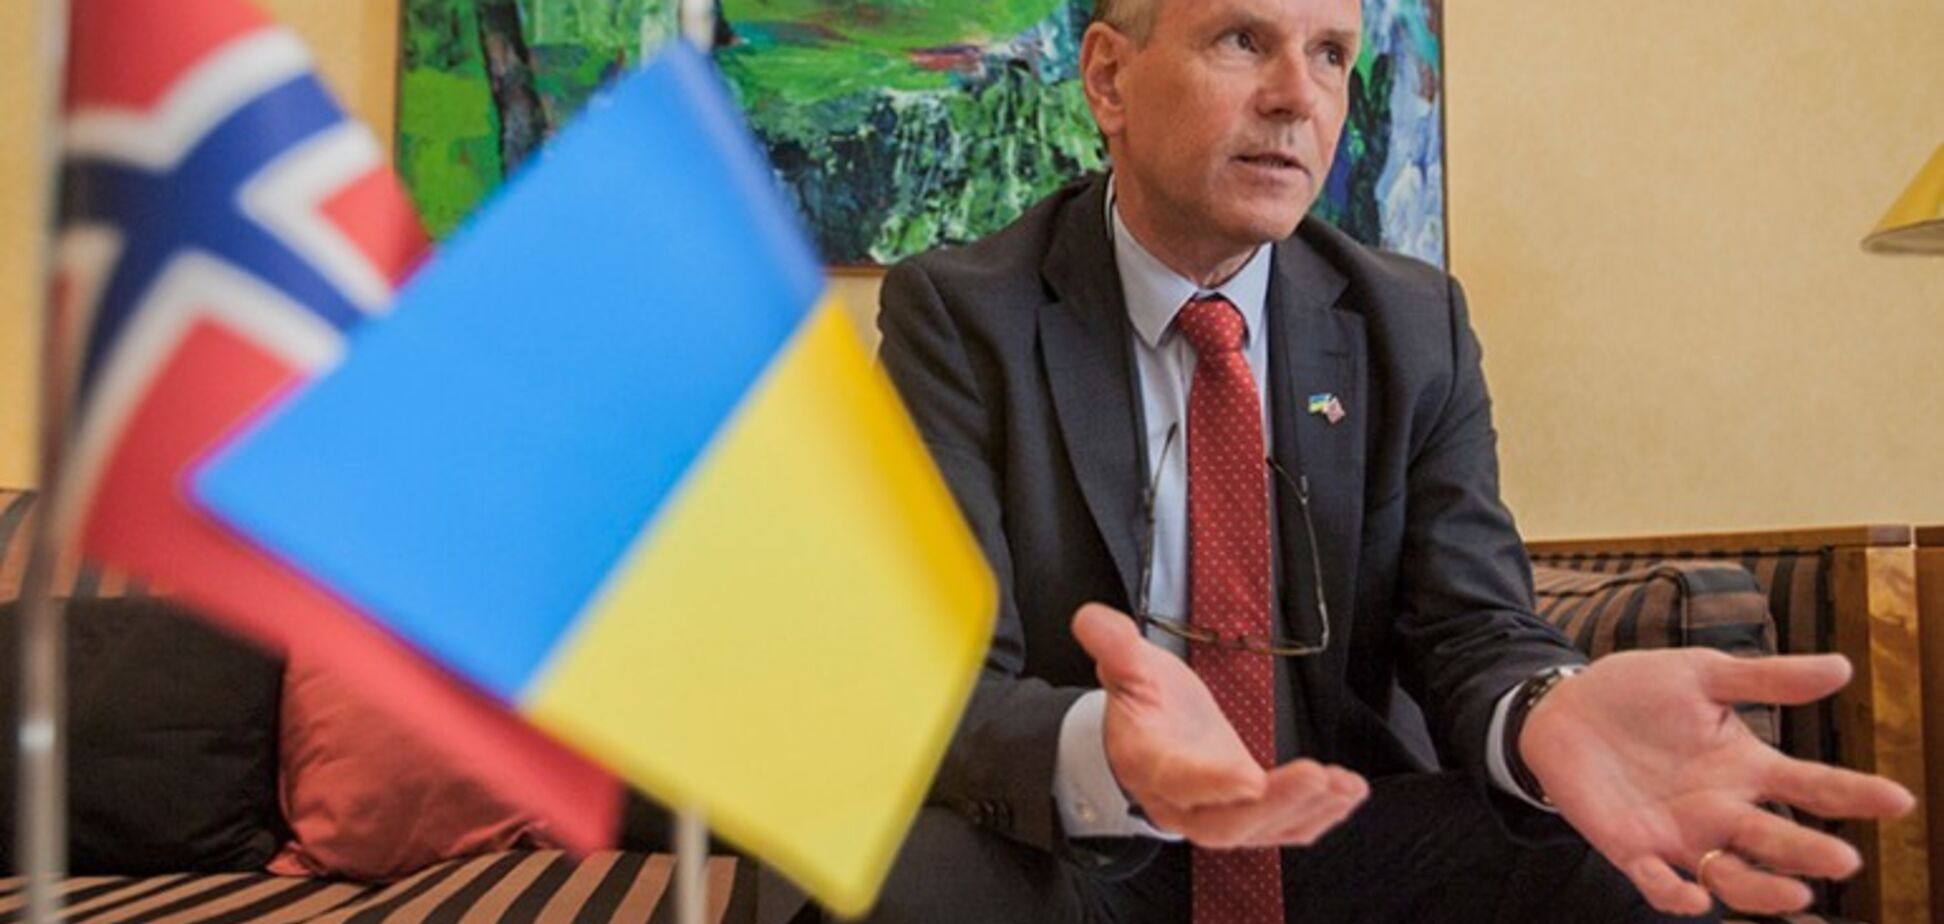 Норвежці не знають, чи закінчився конфлікт на Донбасі - посол